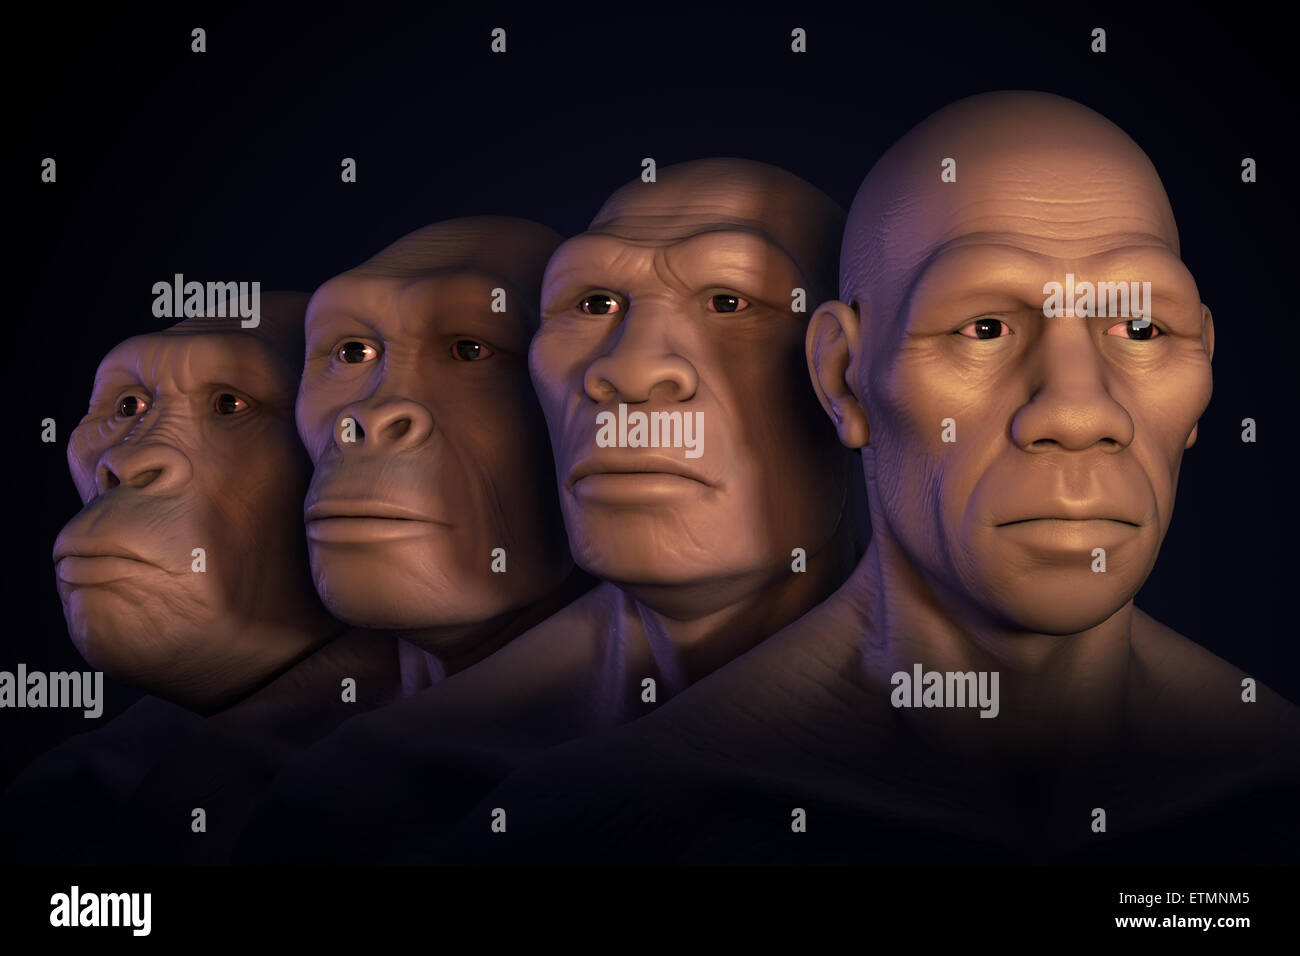 Image conceptuel montrant quatre étapes de l'évolution humaine ; l'australopithecus, Homo habilis, Homo Erectus et Homo Sapiens. Banque D'Images